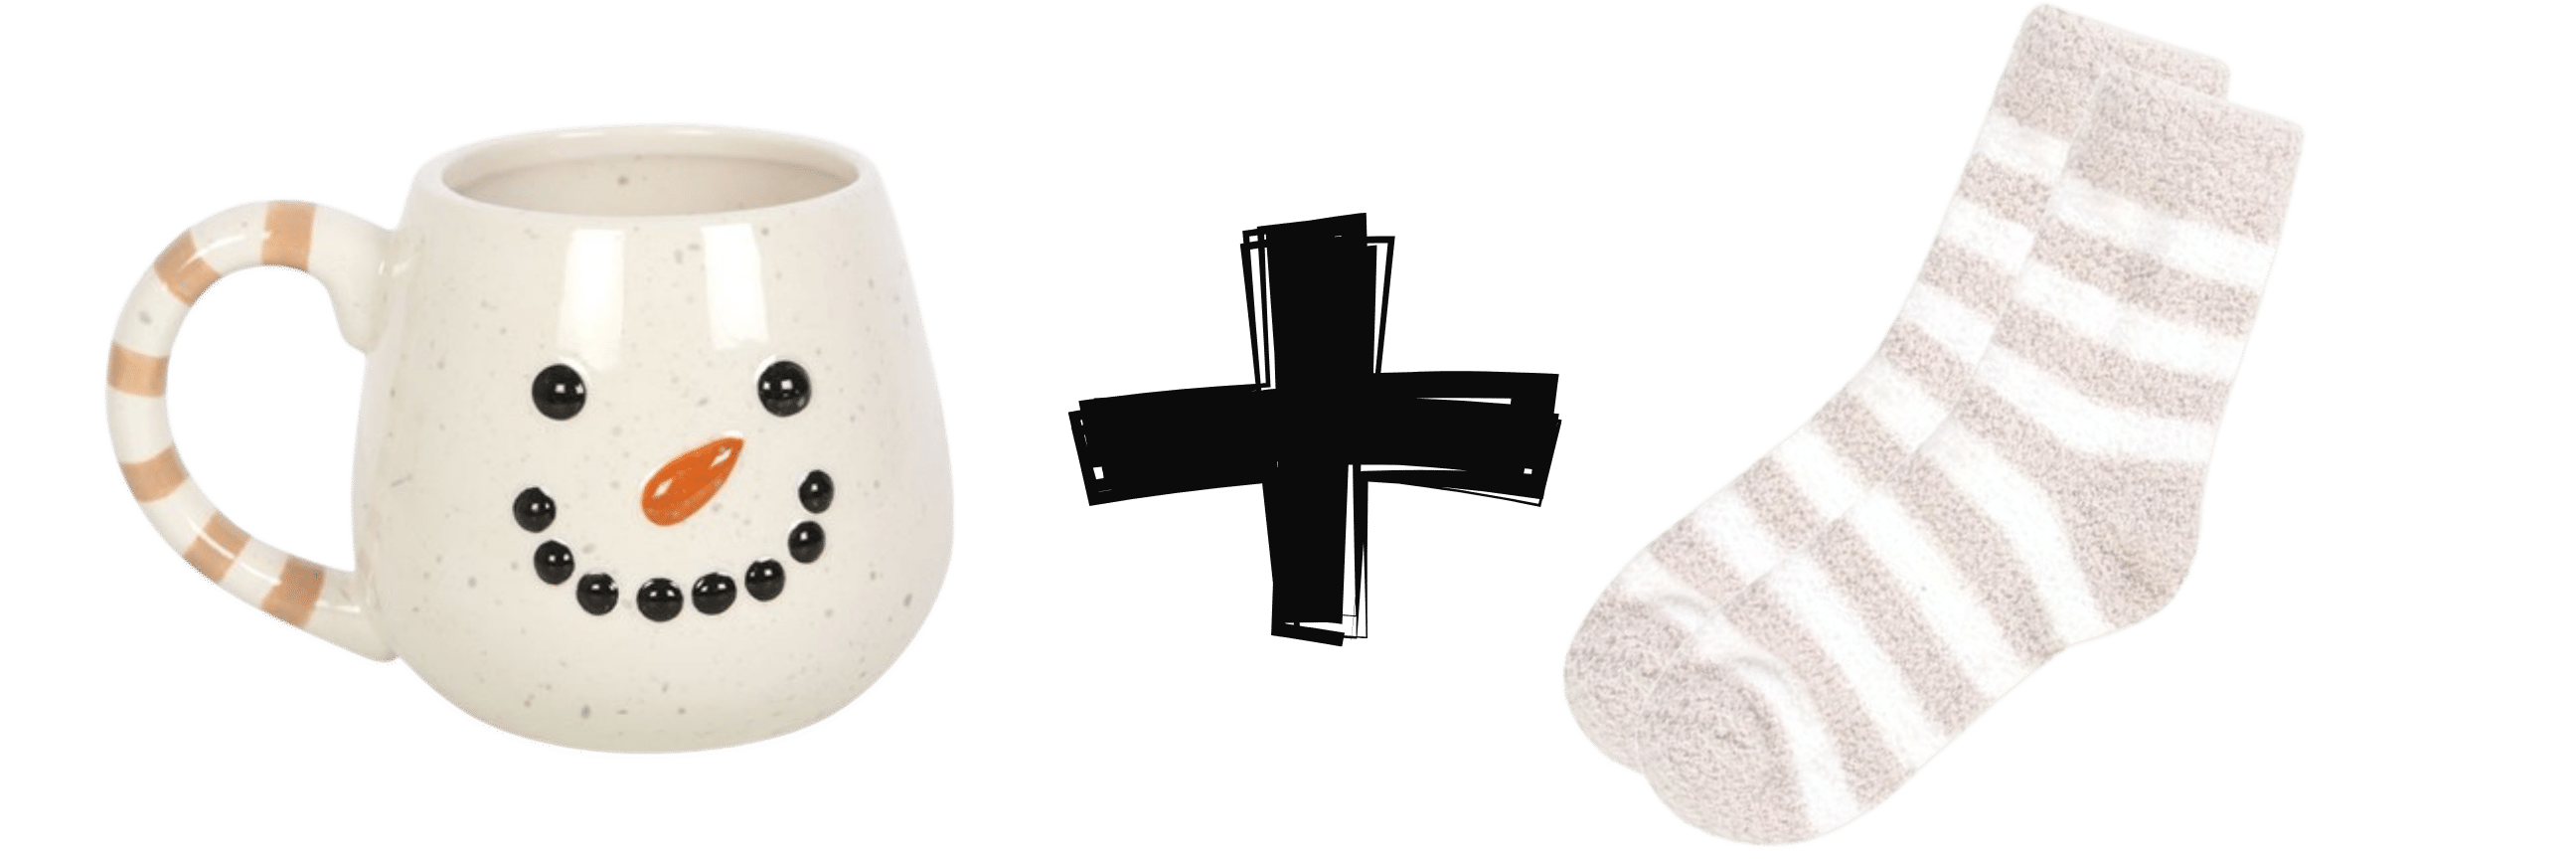 Schneemann Tasse zusammen mit weiß-beige gestreiften Kuschelsocken